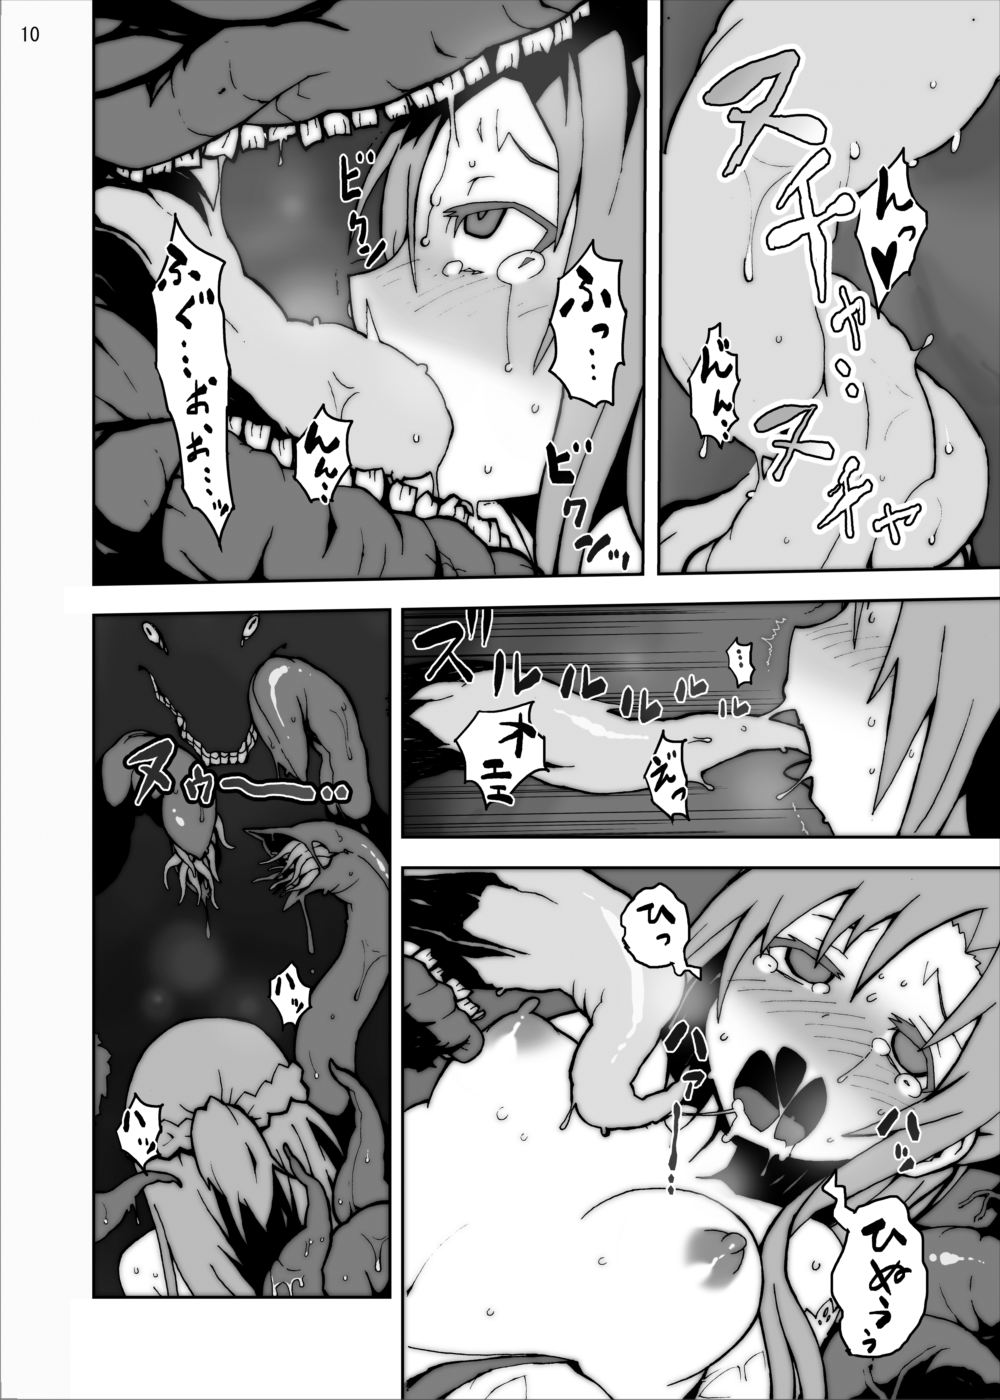 [Studio Nunchaku] Asuna in Tentacle Party Rape Online (Sword Art Online) page 9 full